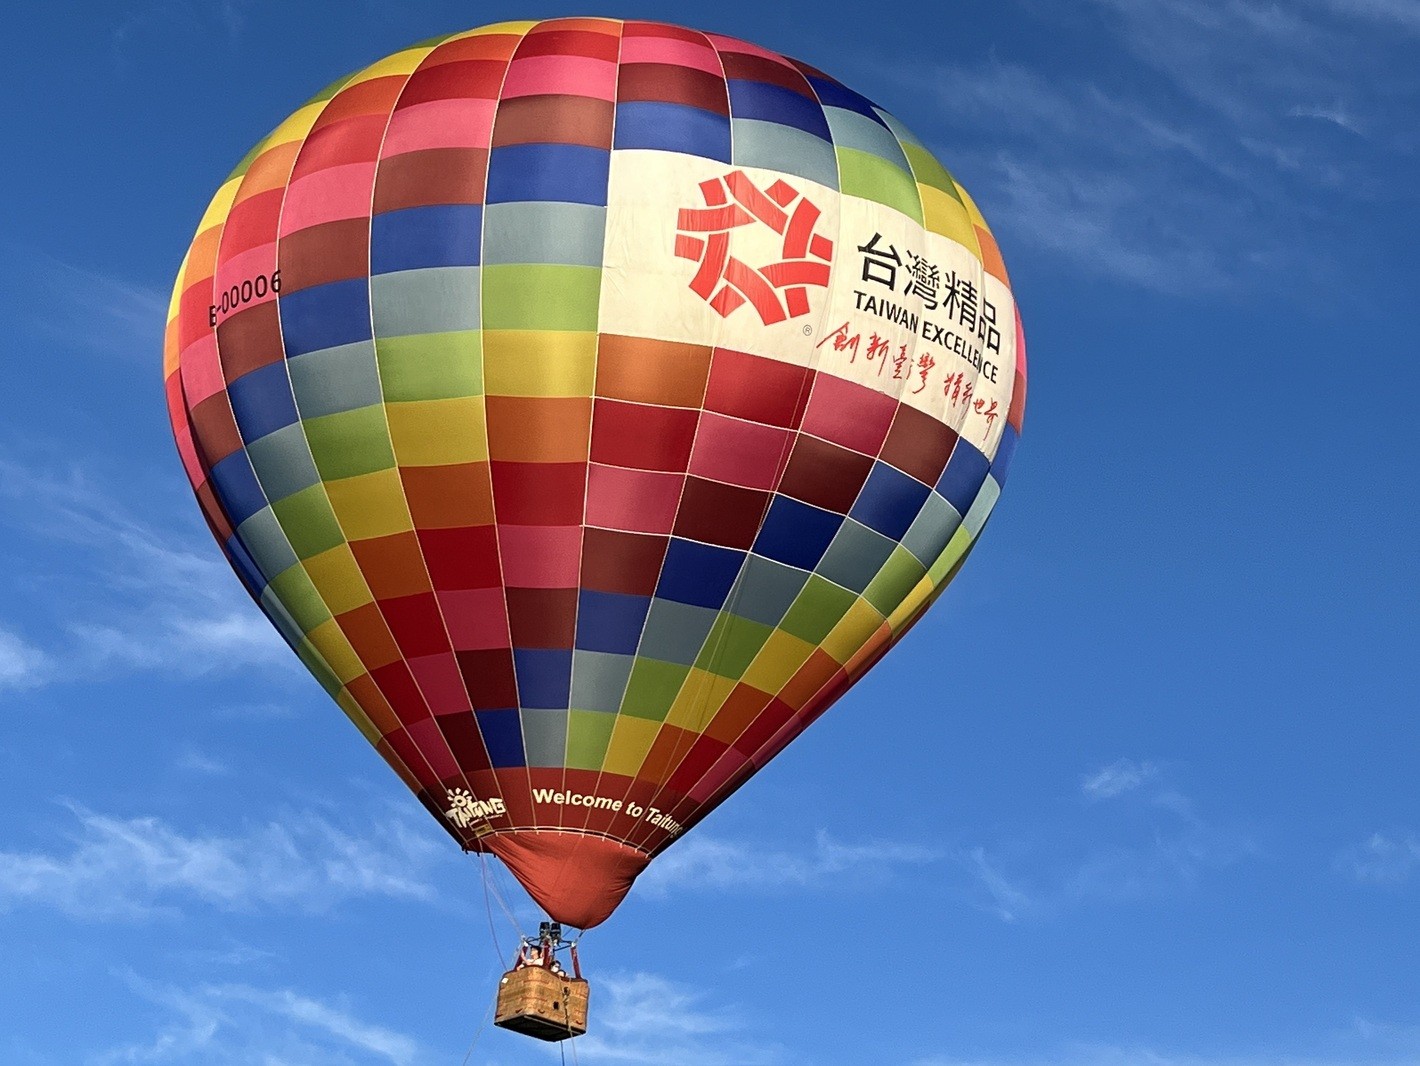 臺東熱氣球嘉年華已是我國具指標性之國際活動，每年吸引國際熱氣球愛好者參加，創新多元的各式造型熱氣球也吸引眾多國內外觀光客。